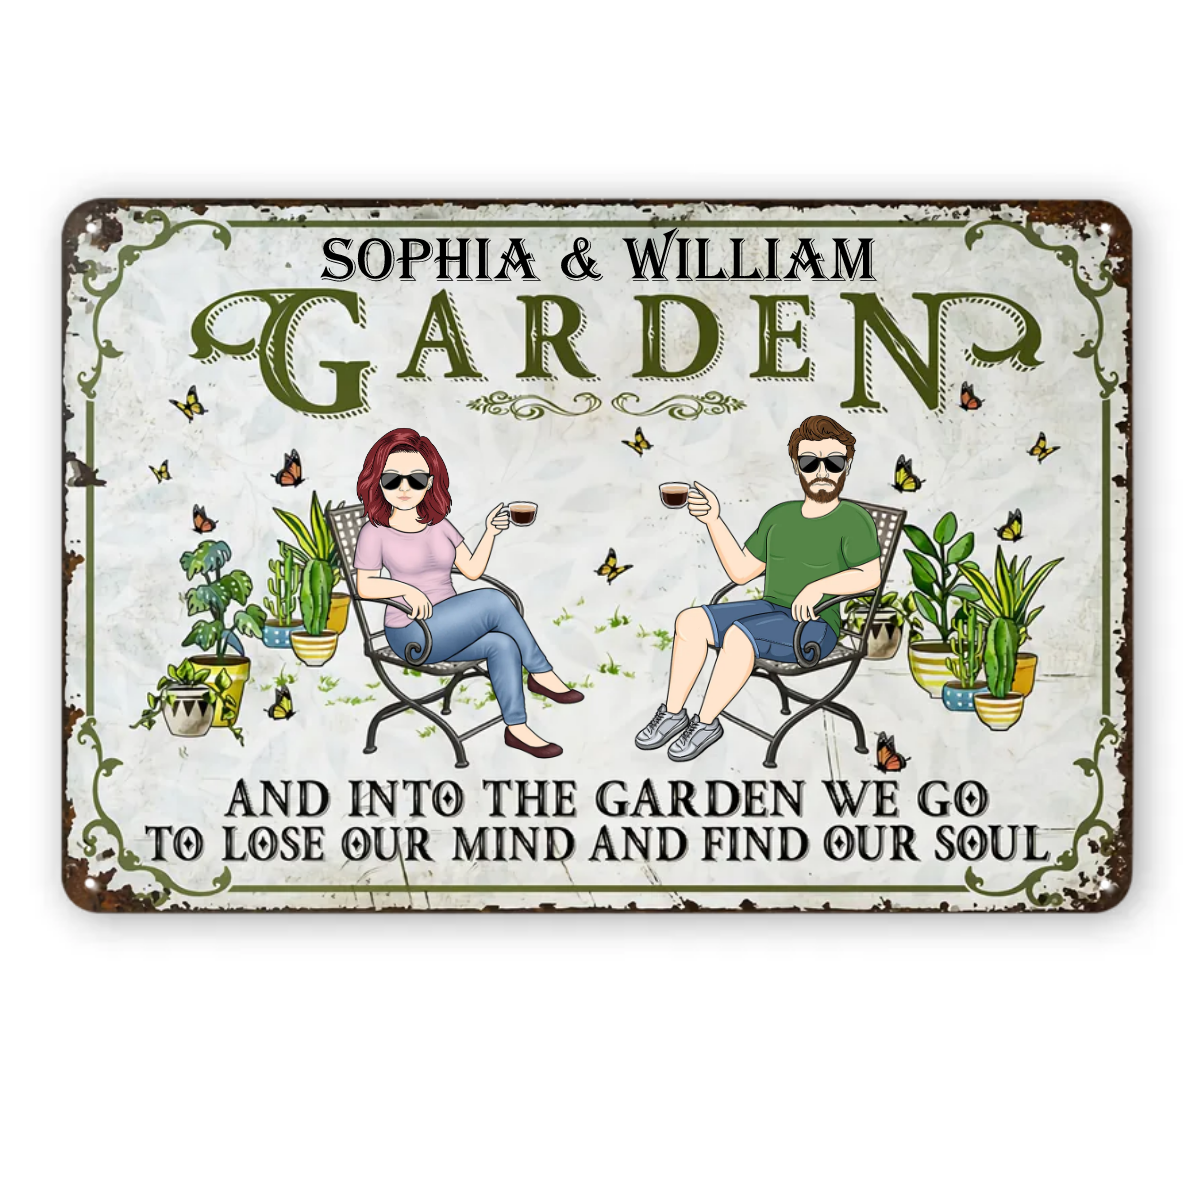 And Into The Garden We Go Gardening Family - カップル向けガーデンサイン - パーソナライズされたカスタムクラシックメタルサイン